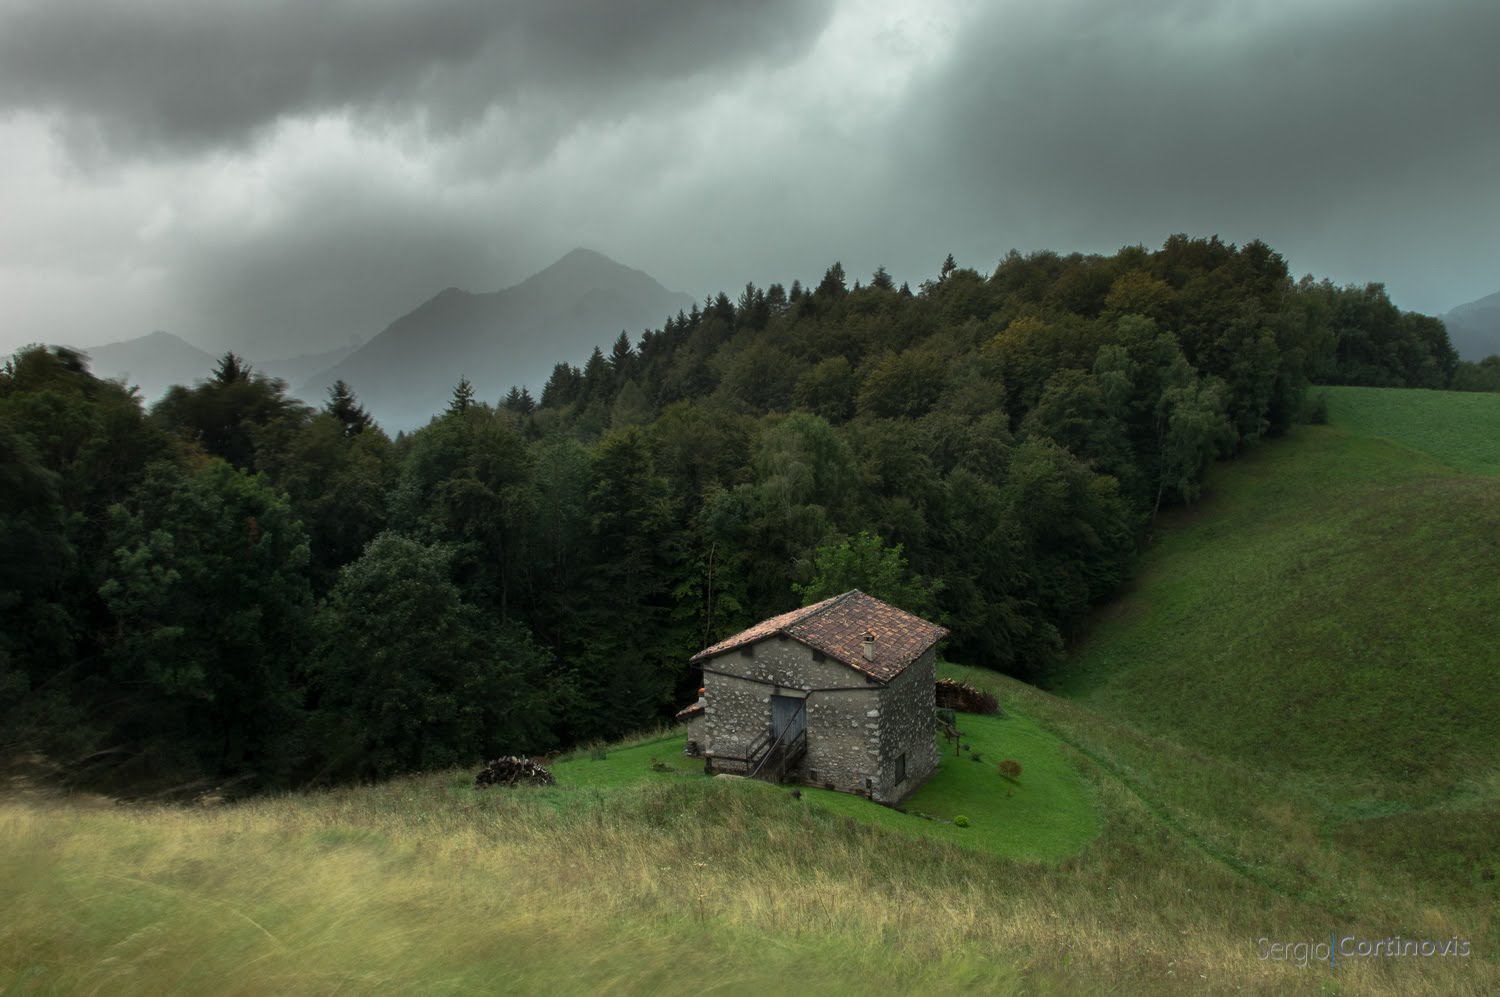 Temporale a Valpiana di Serina in Valle Brembana (Provincia di Bergamo). Cielo scuro sopra un prato e delle montagne